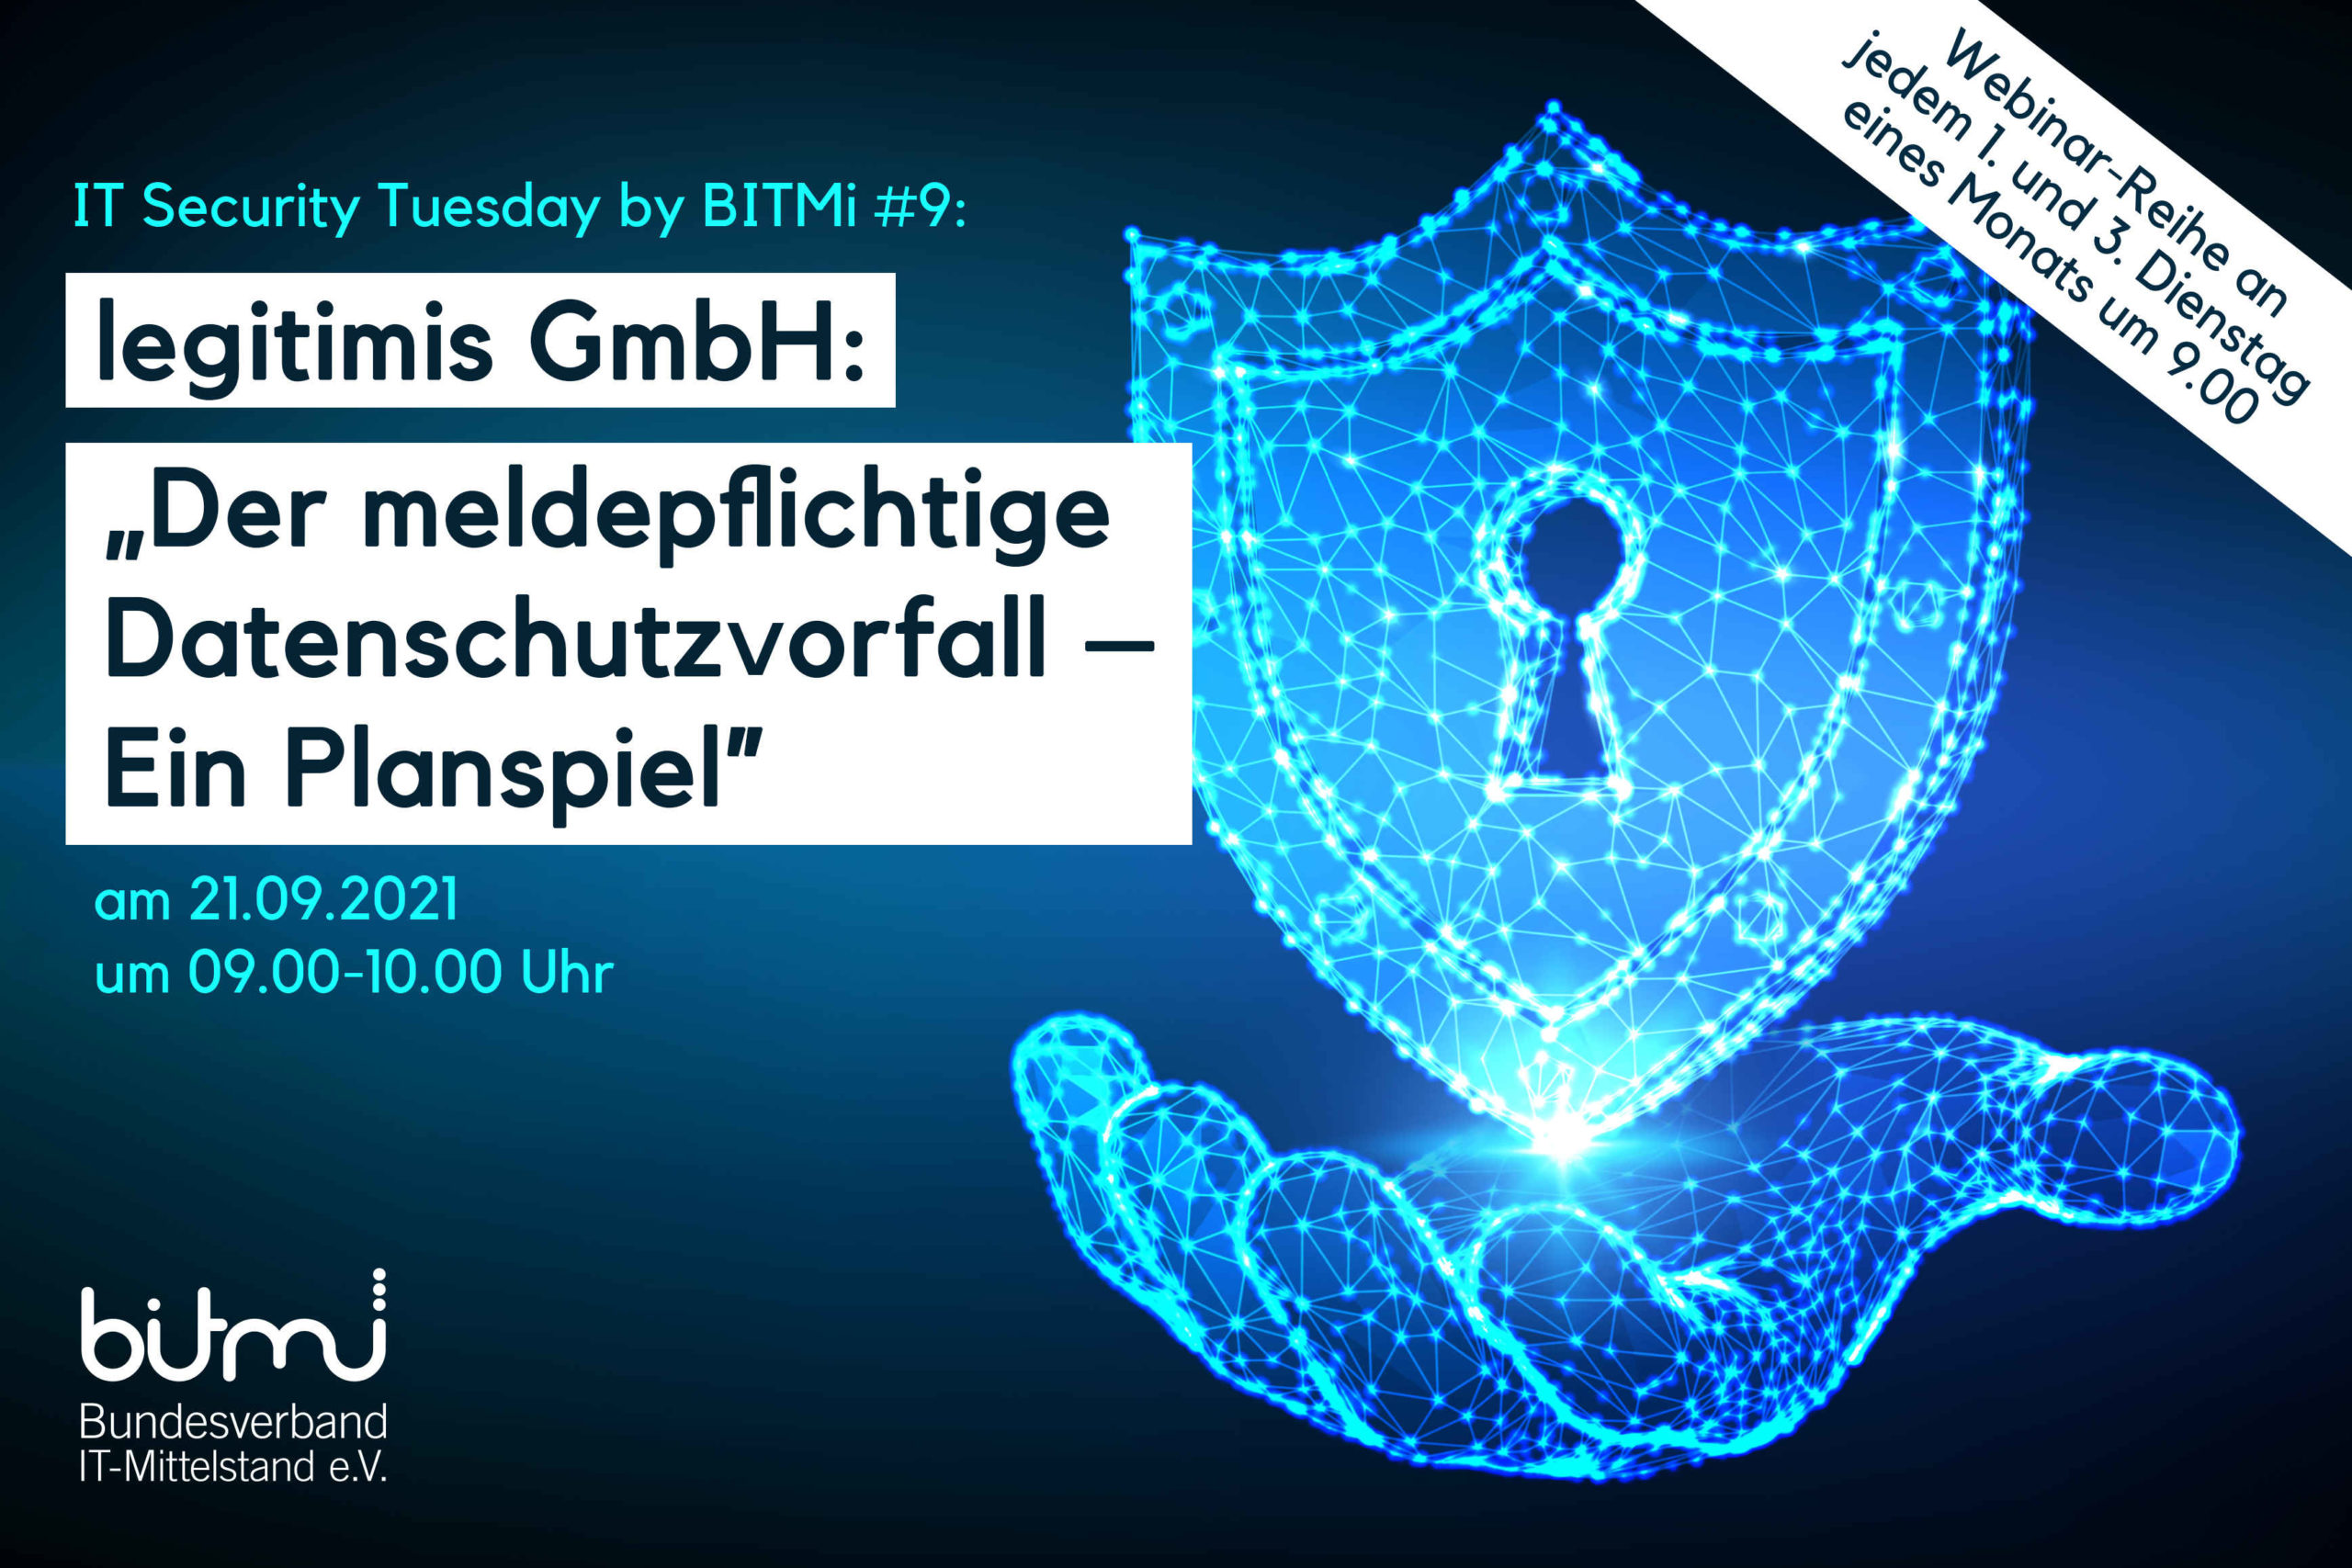 IT-Security Tuesday mit BITMi Mitglied legitimis GmbH: "Der meldepflichtige Datenschutzvorfall ─ Ein Planspiel"